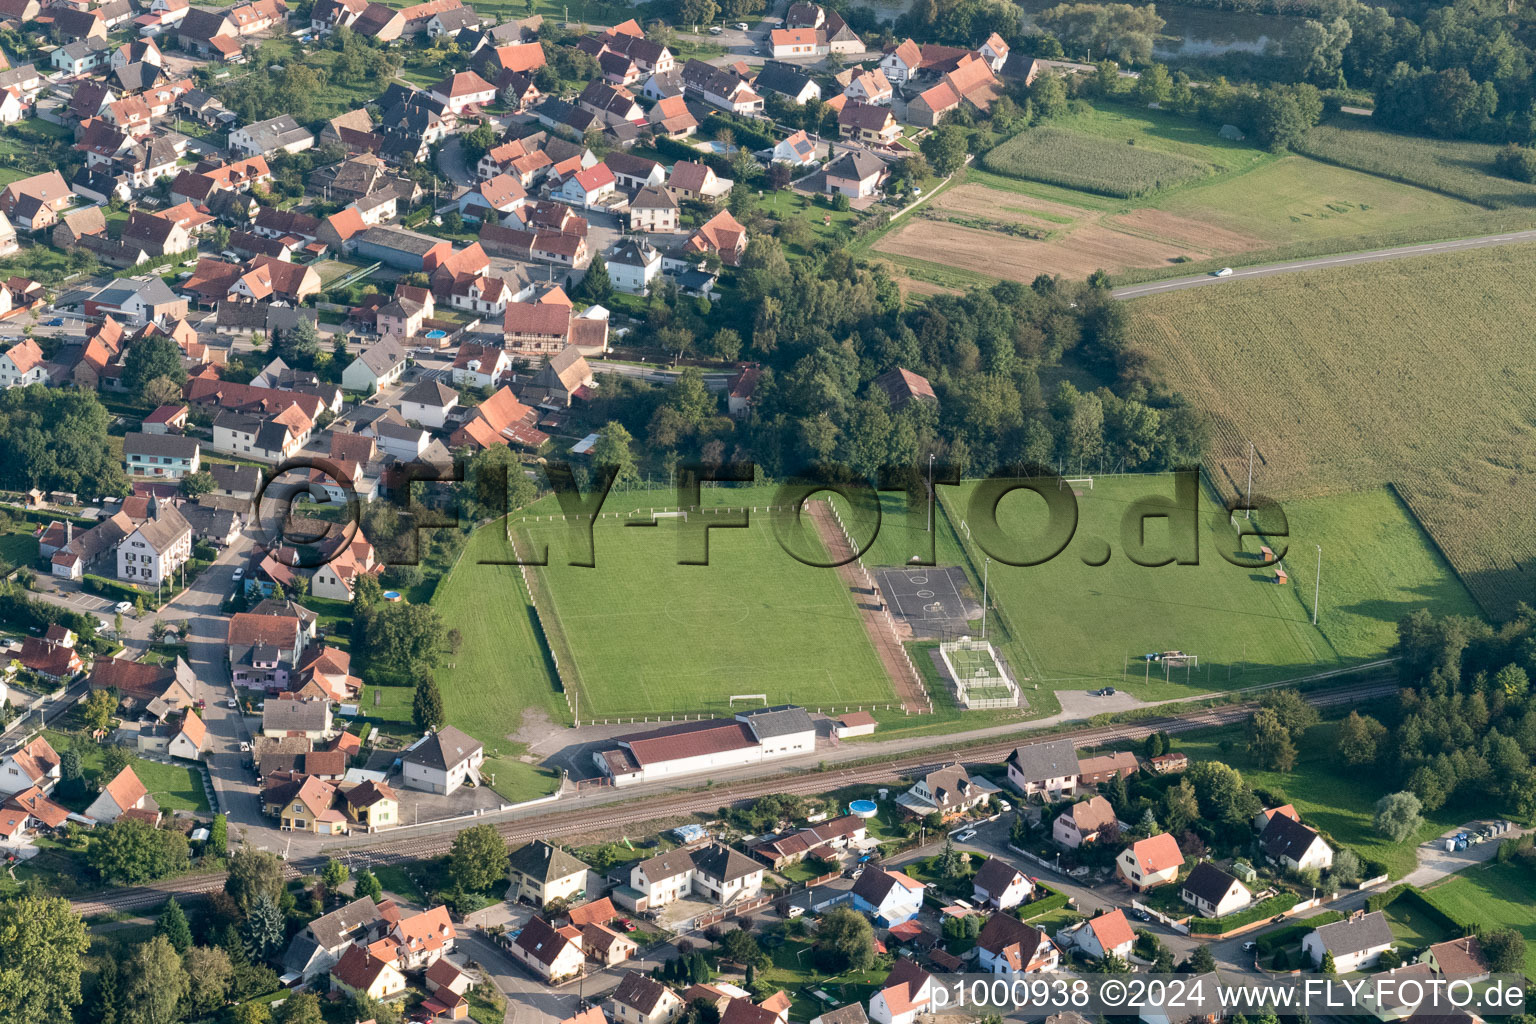 Rountzenheim dans le département Bas Rhin, France vue d'en haut